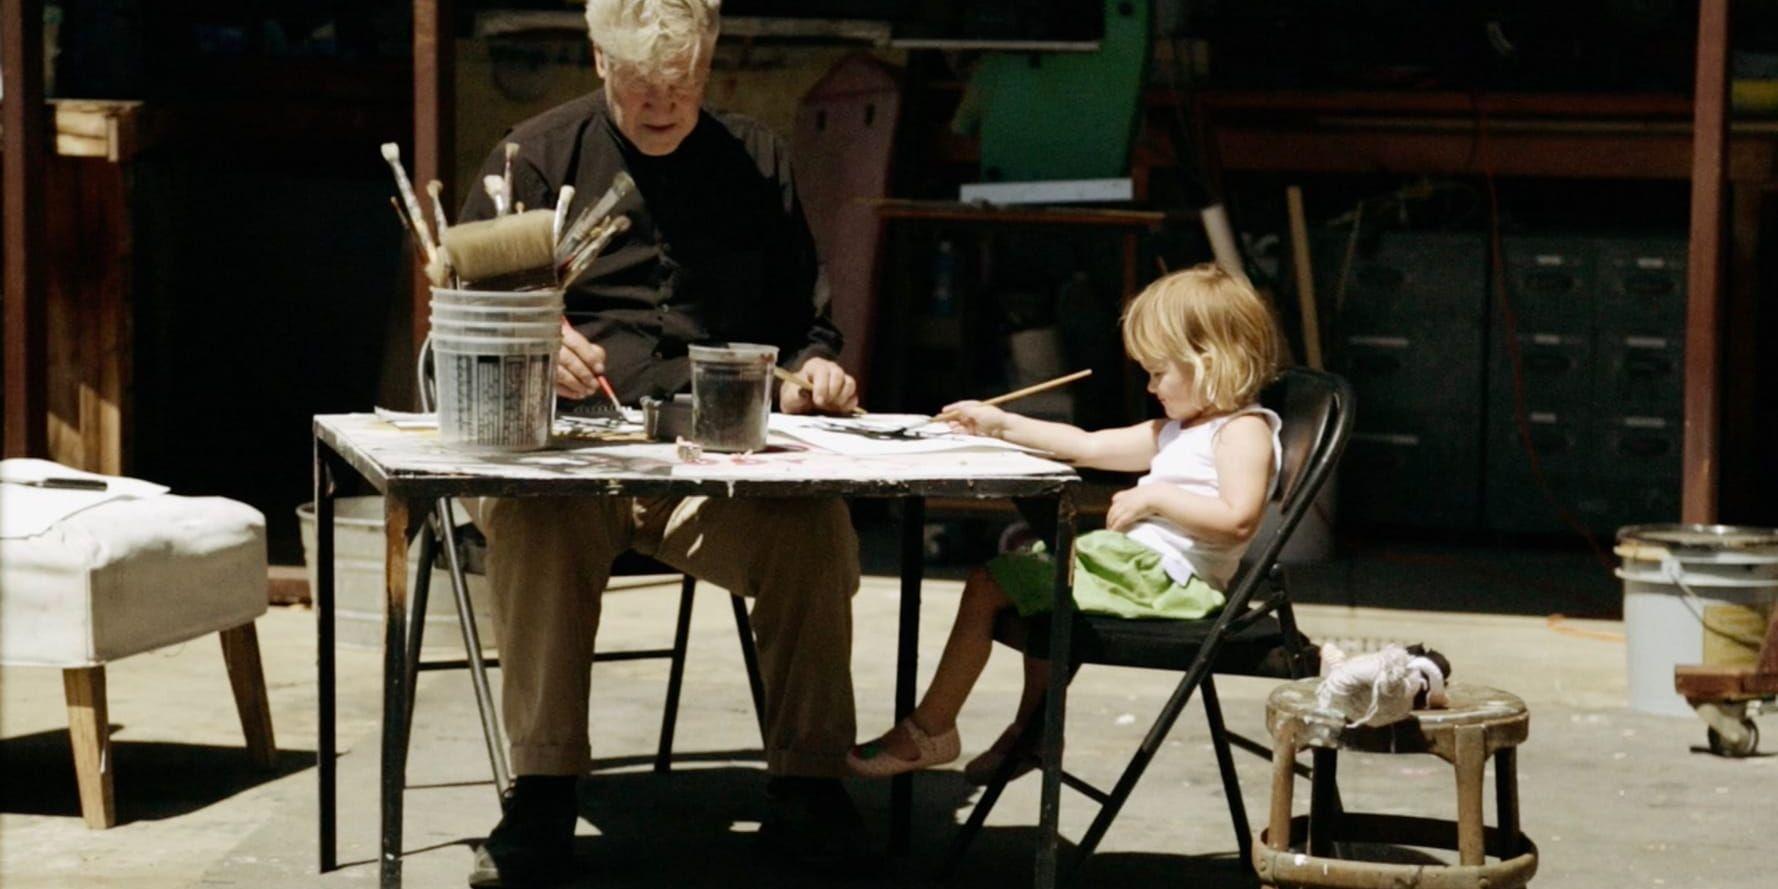 Dokumentären om Lynch handlar om konst. Här: Lynch och hans dotter Linda målar tillsammans. Bild: Njutafilms